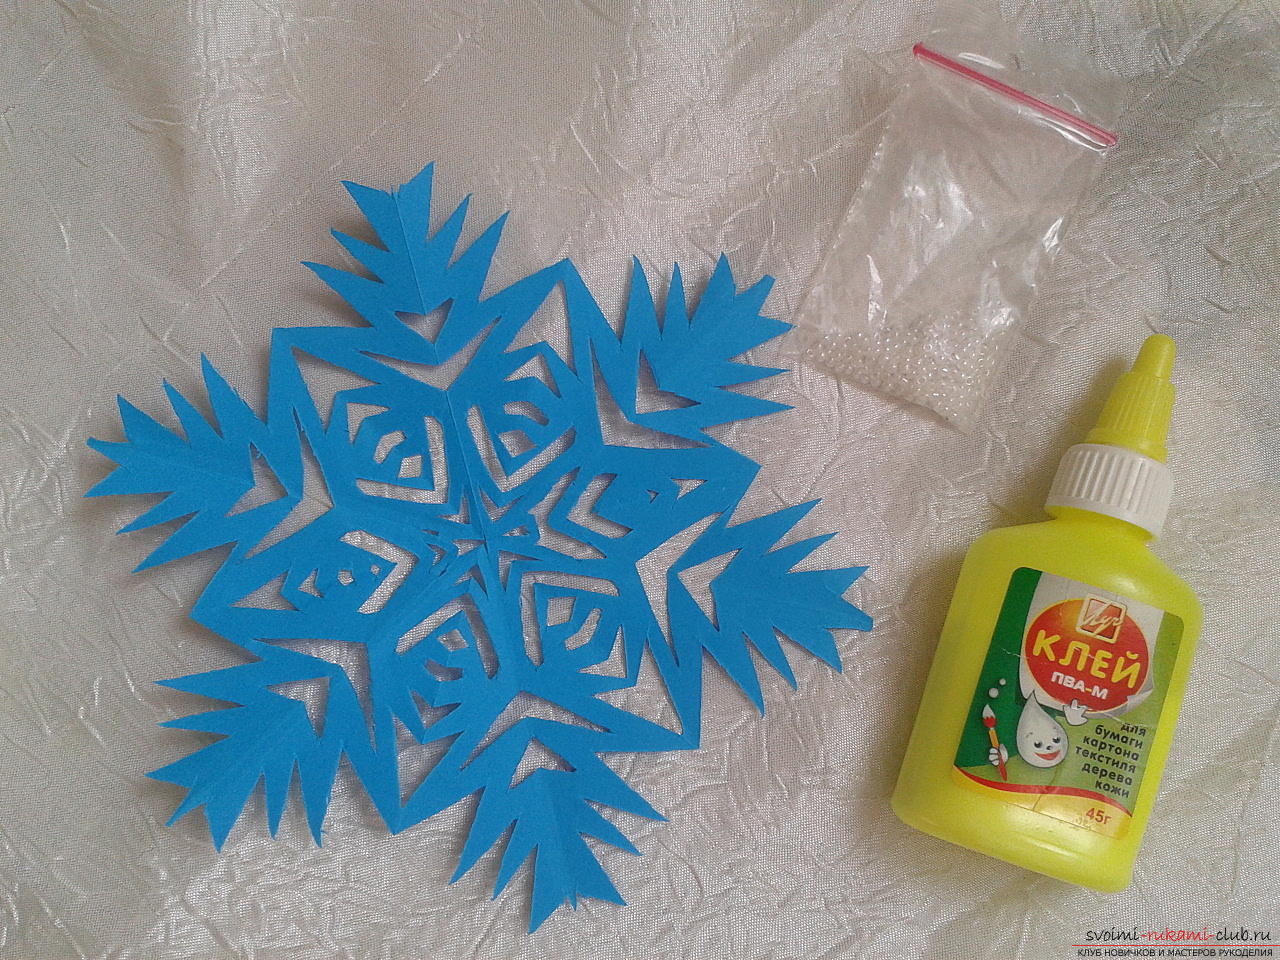 Как сделать снежинку из бумаги к Новому году? Урок по созданию снежинки из бумаги с подробными рекомендациями и фото